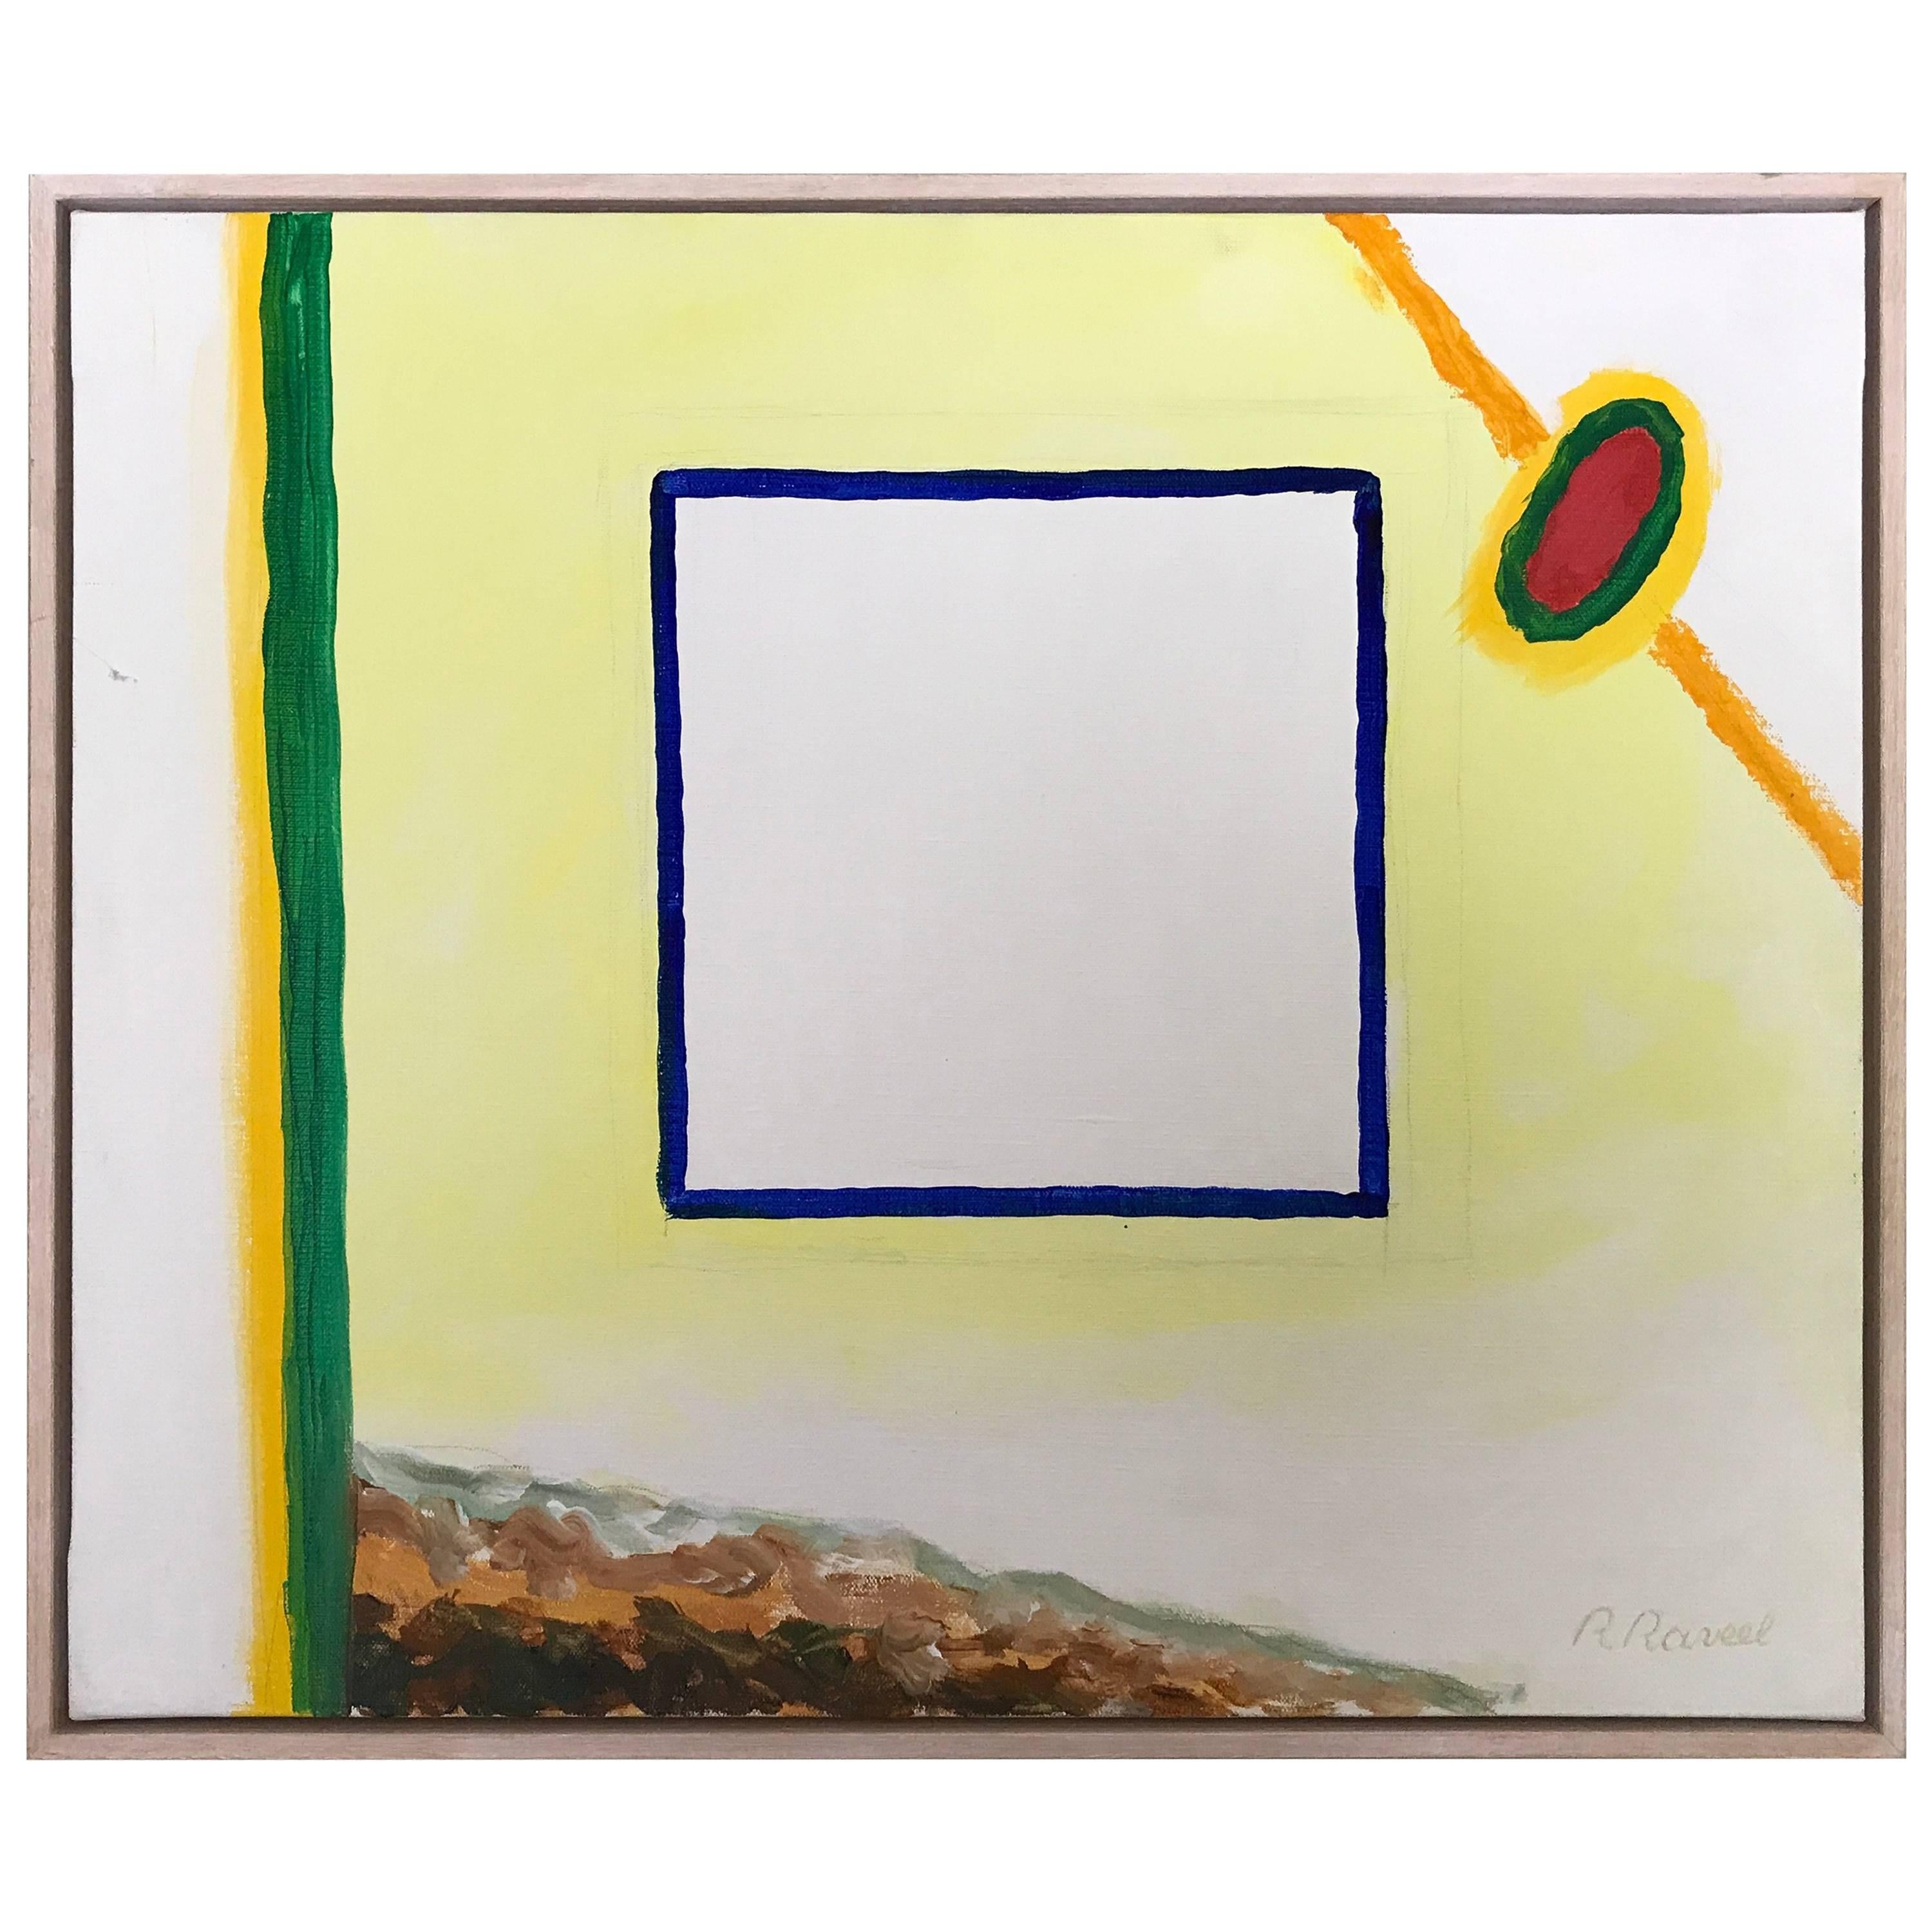 Roger Raveel "Mister Mondriaan" Title 2002 Oil on Canvas